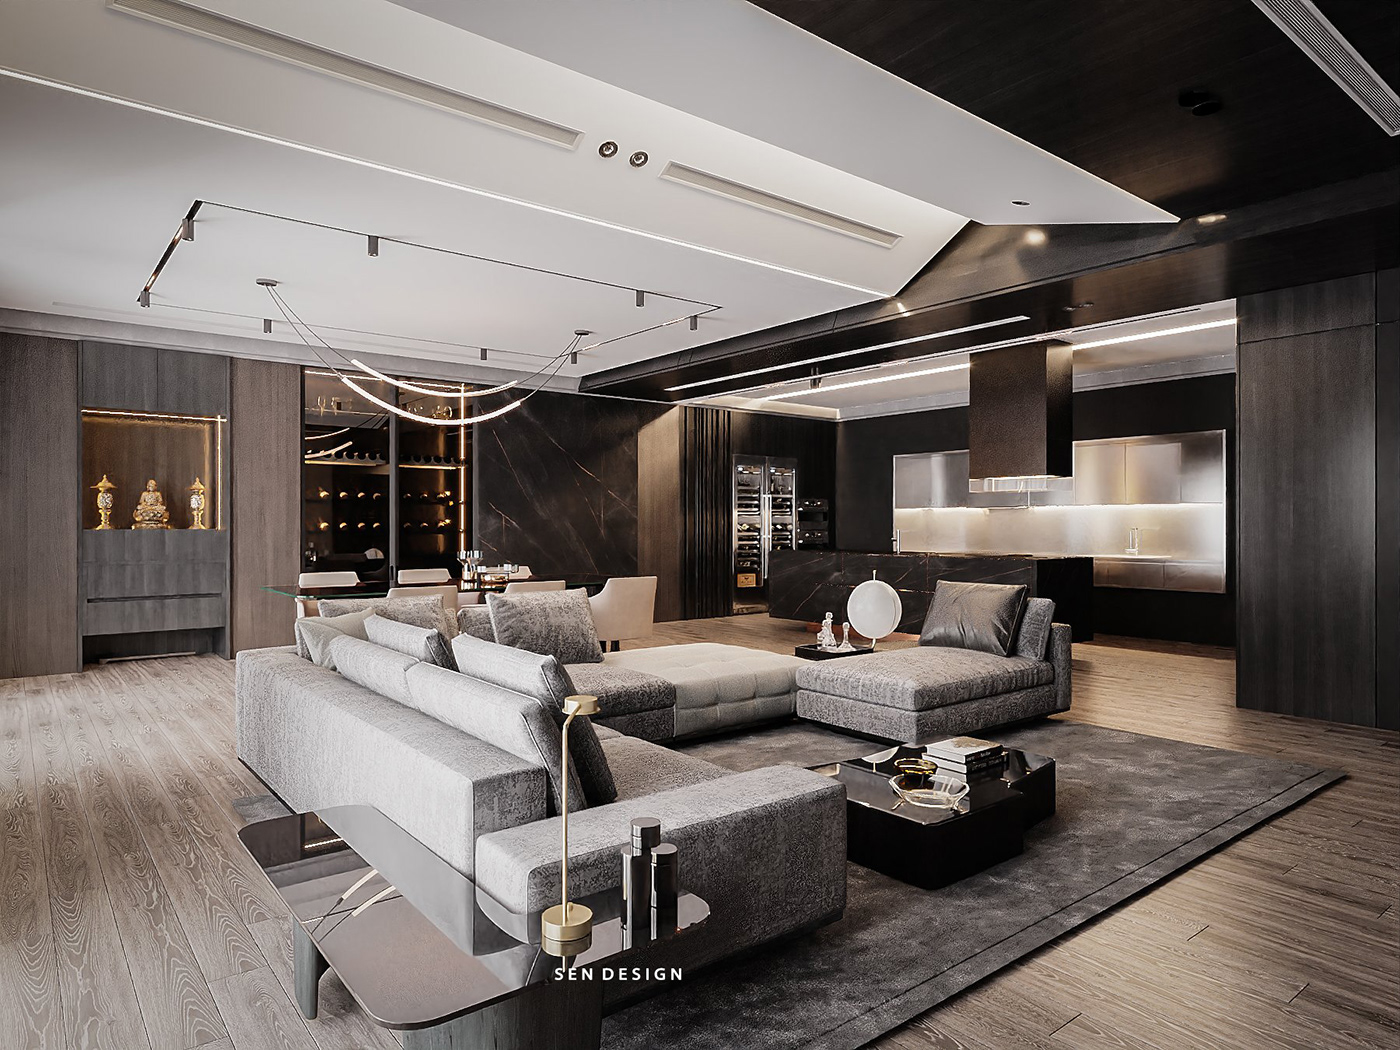 achitecture Apatment design villa duplex Interior interior design  livingroom modern luxury sendesign